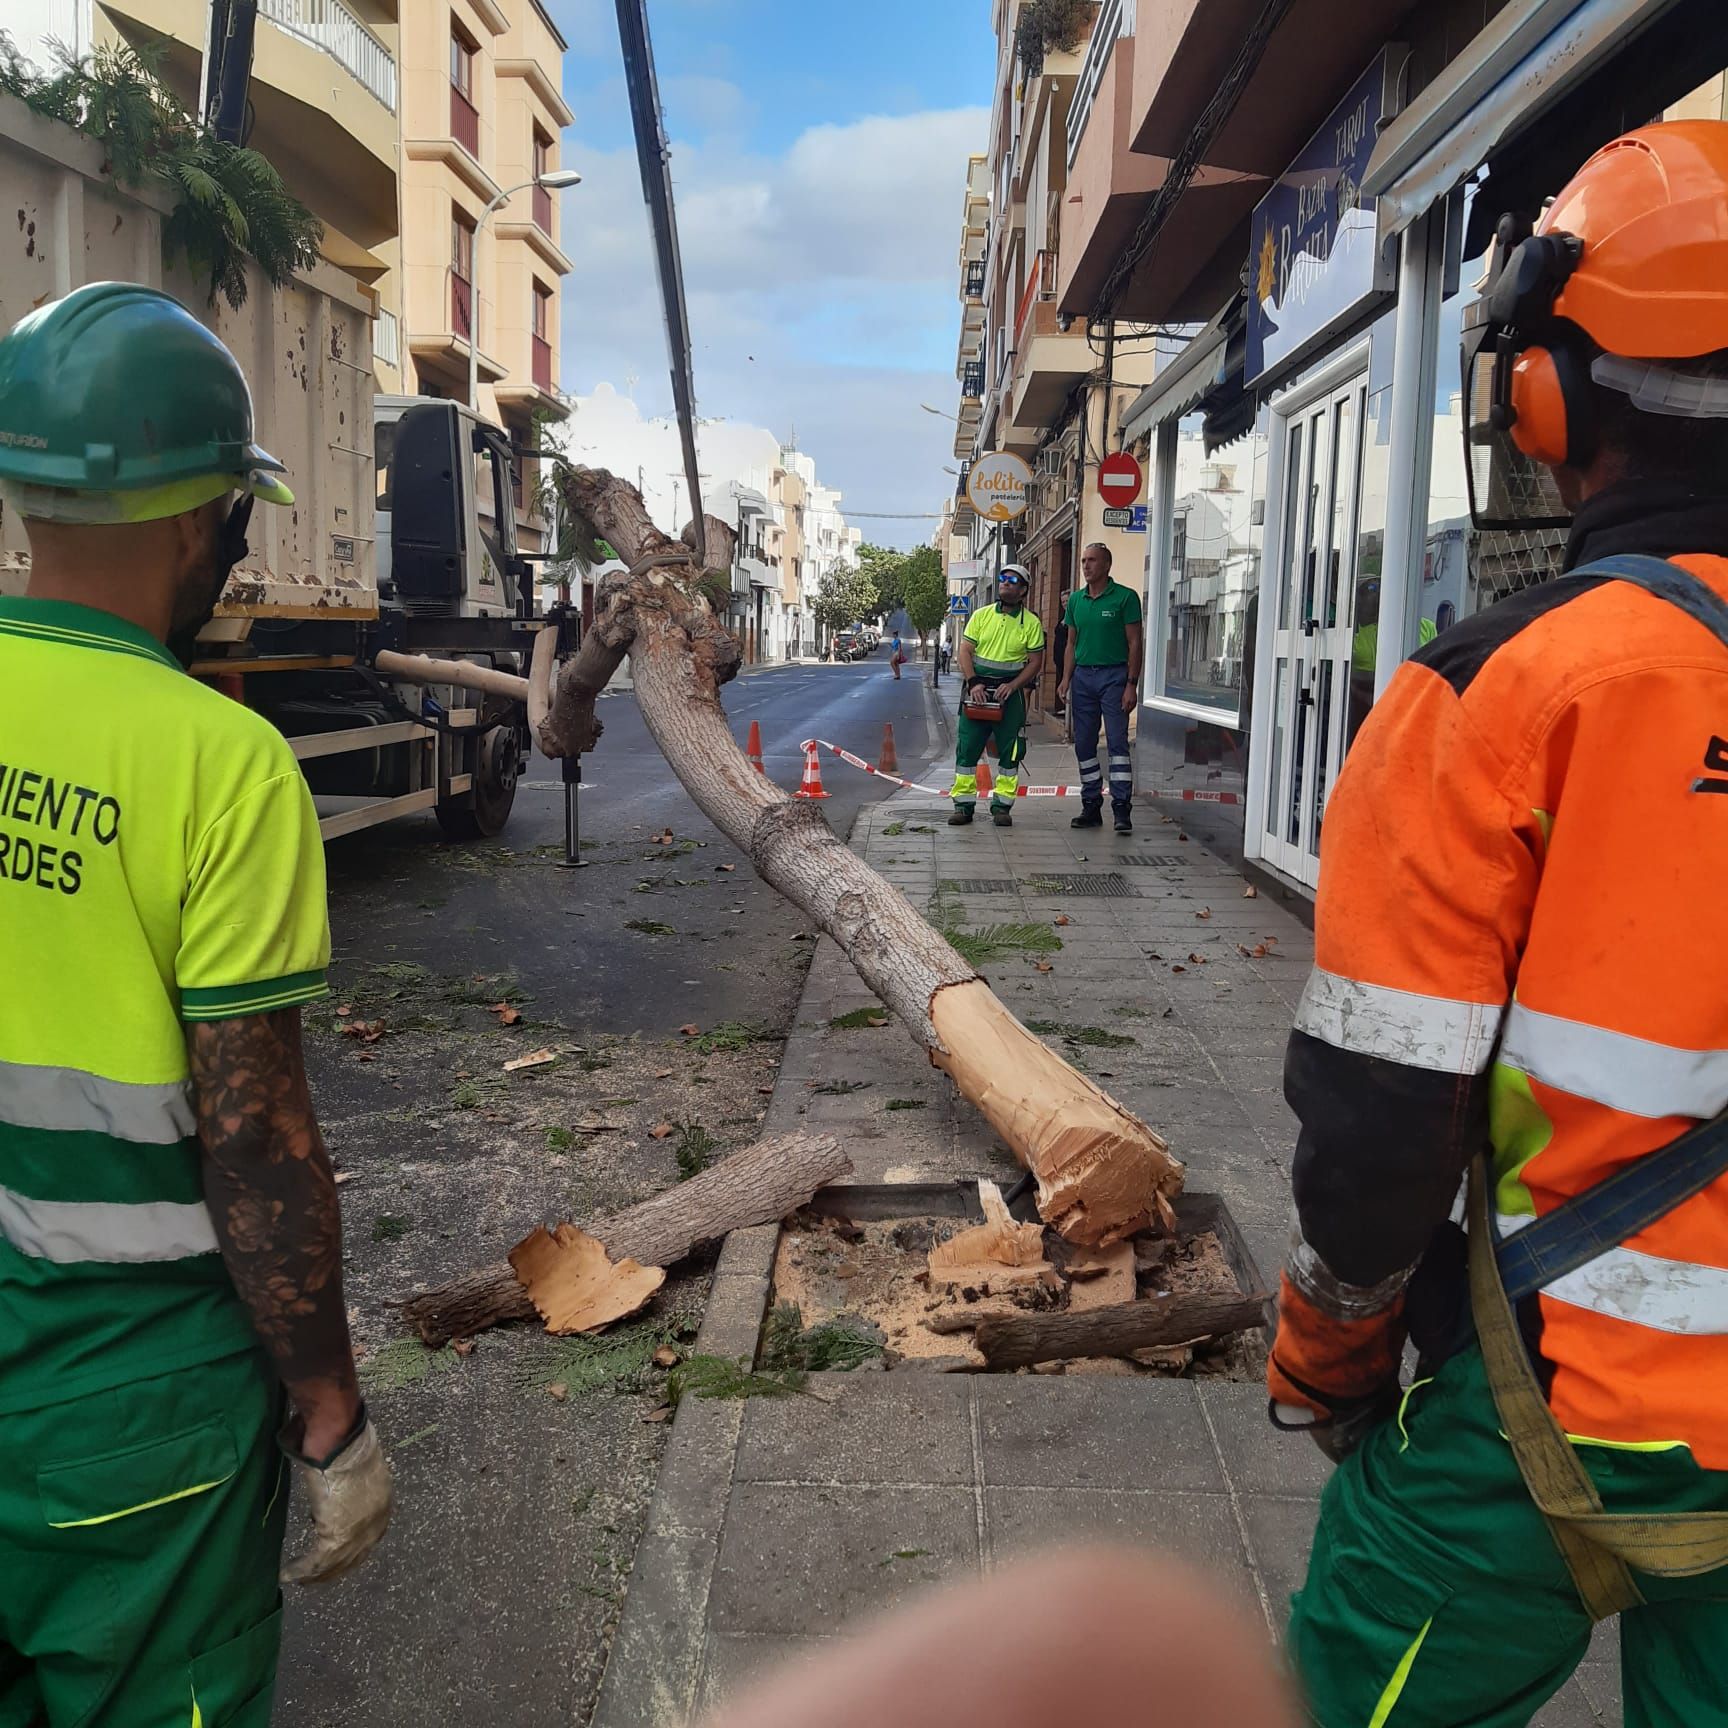 Talan un árbol tras el impacto de un camión en Arrecife